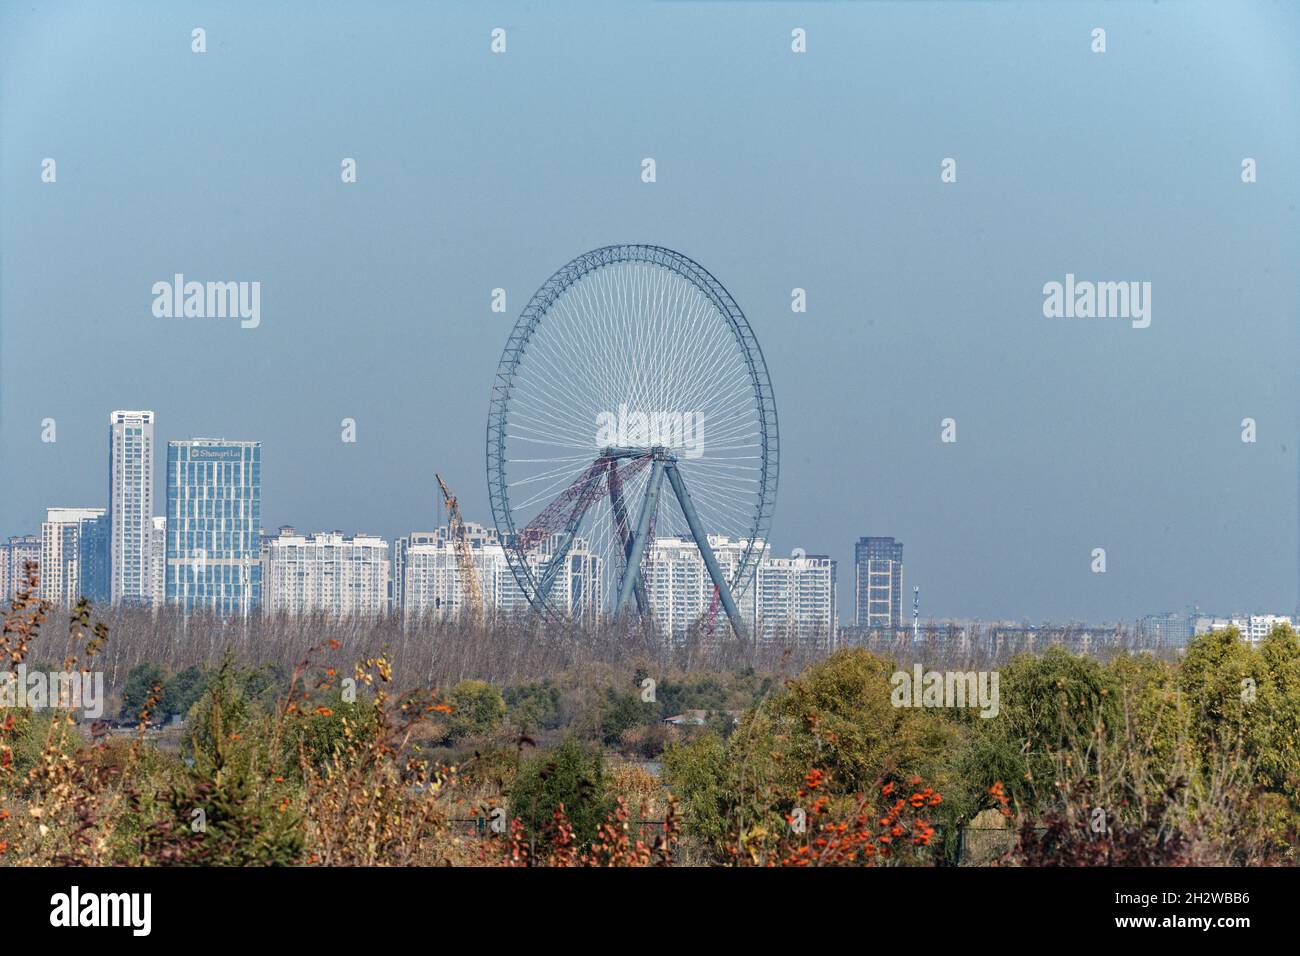 Harbin tiene una nueva rueda de ferris, la más grande de Asia Foto de stock